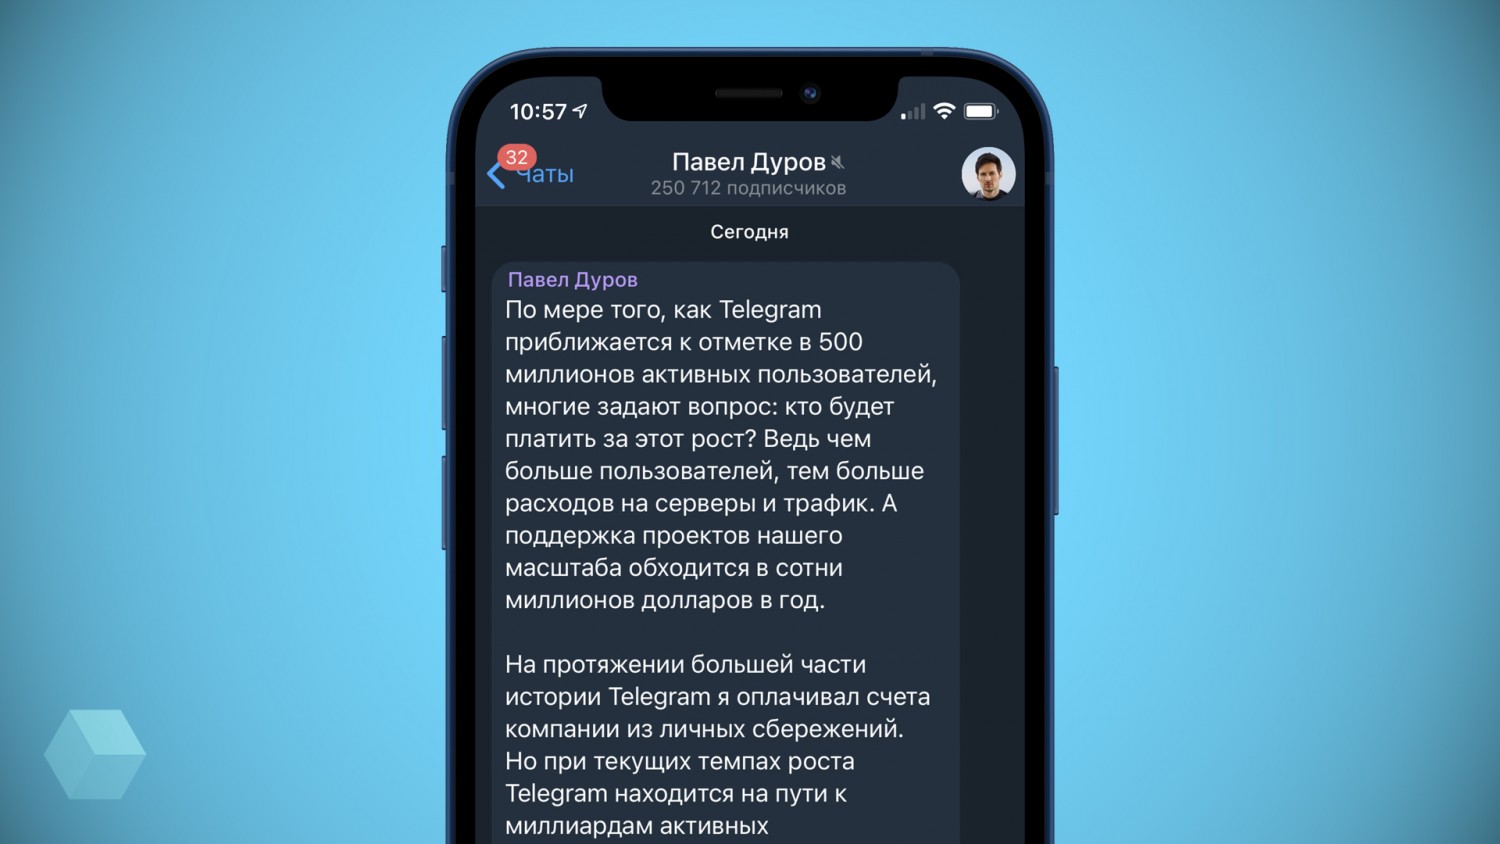 Дуров рассказал, как планирует монетизировать Telegram